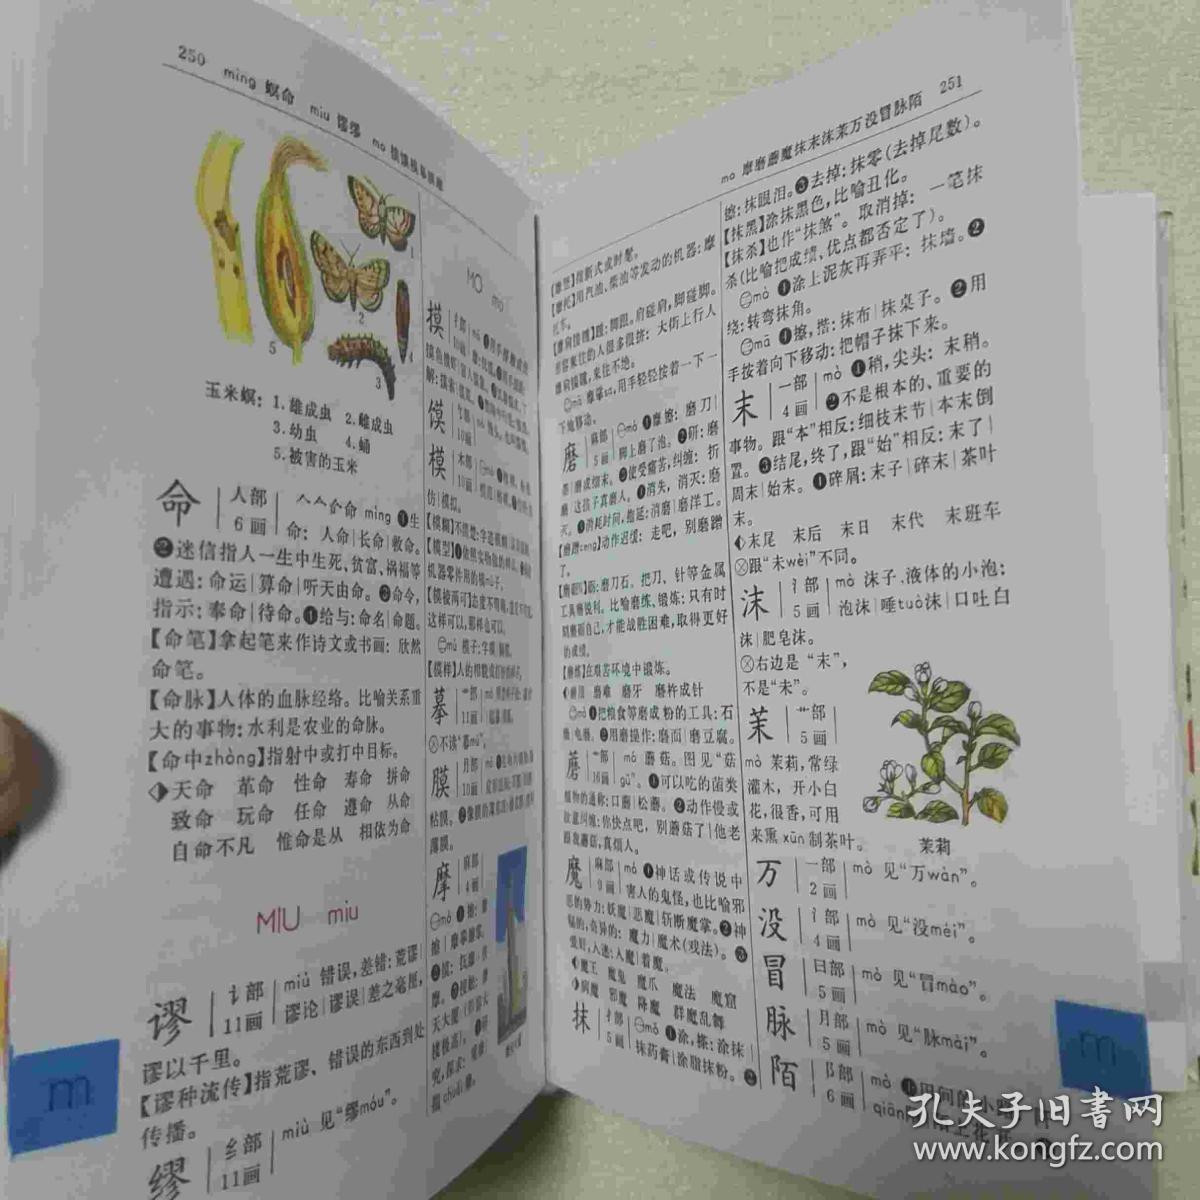 彩色版:新编小学生字典(修订本)